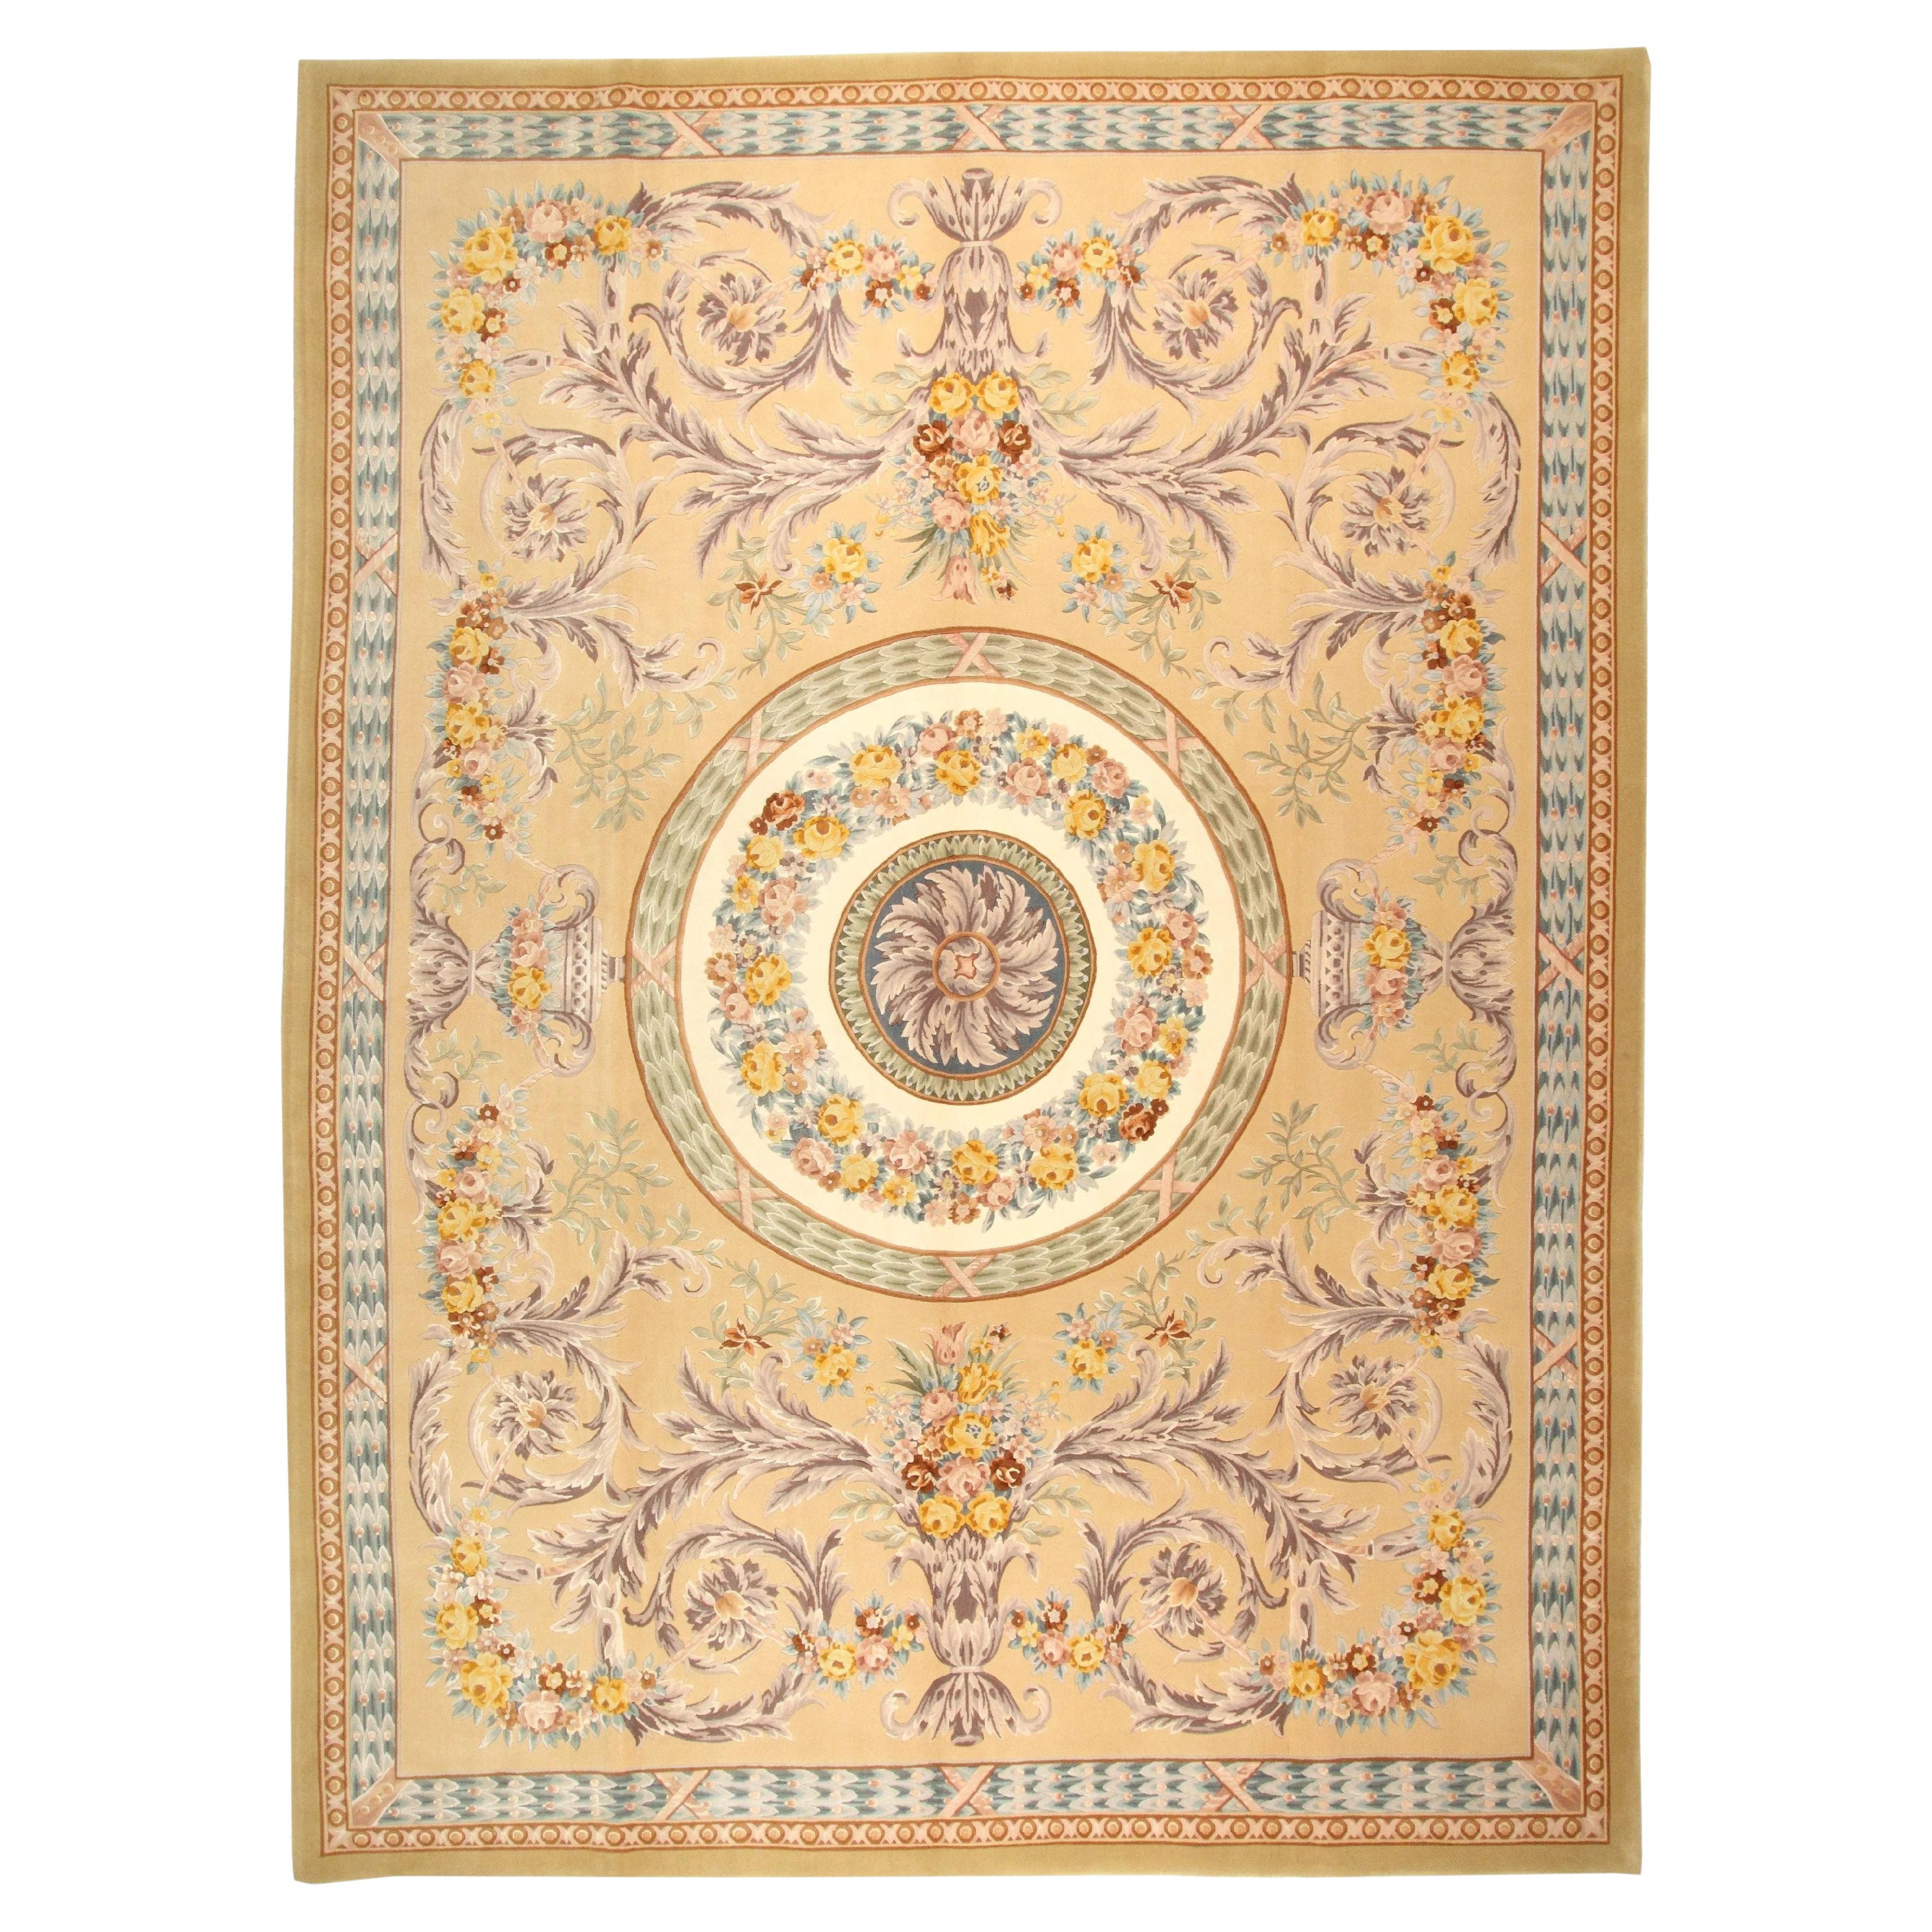 VIA COMO 'Granarie' handgeknüpfter Teppich aus Wolle und Seide 10x13, Unikat, selten, Unikat